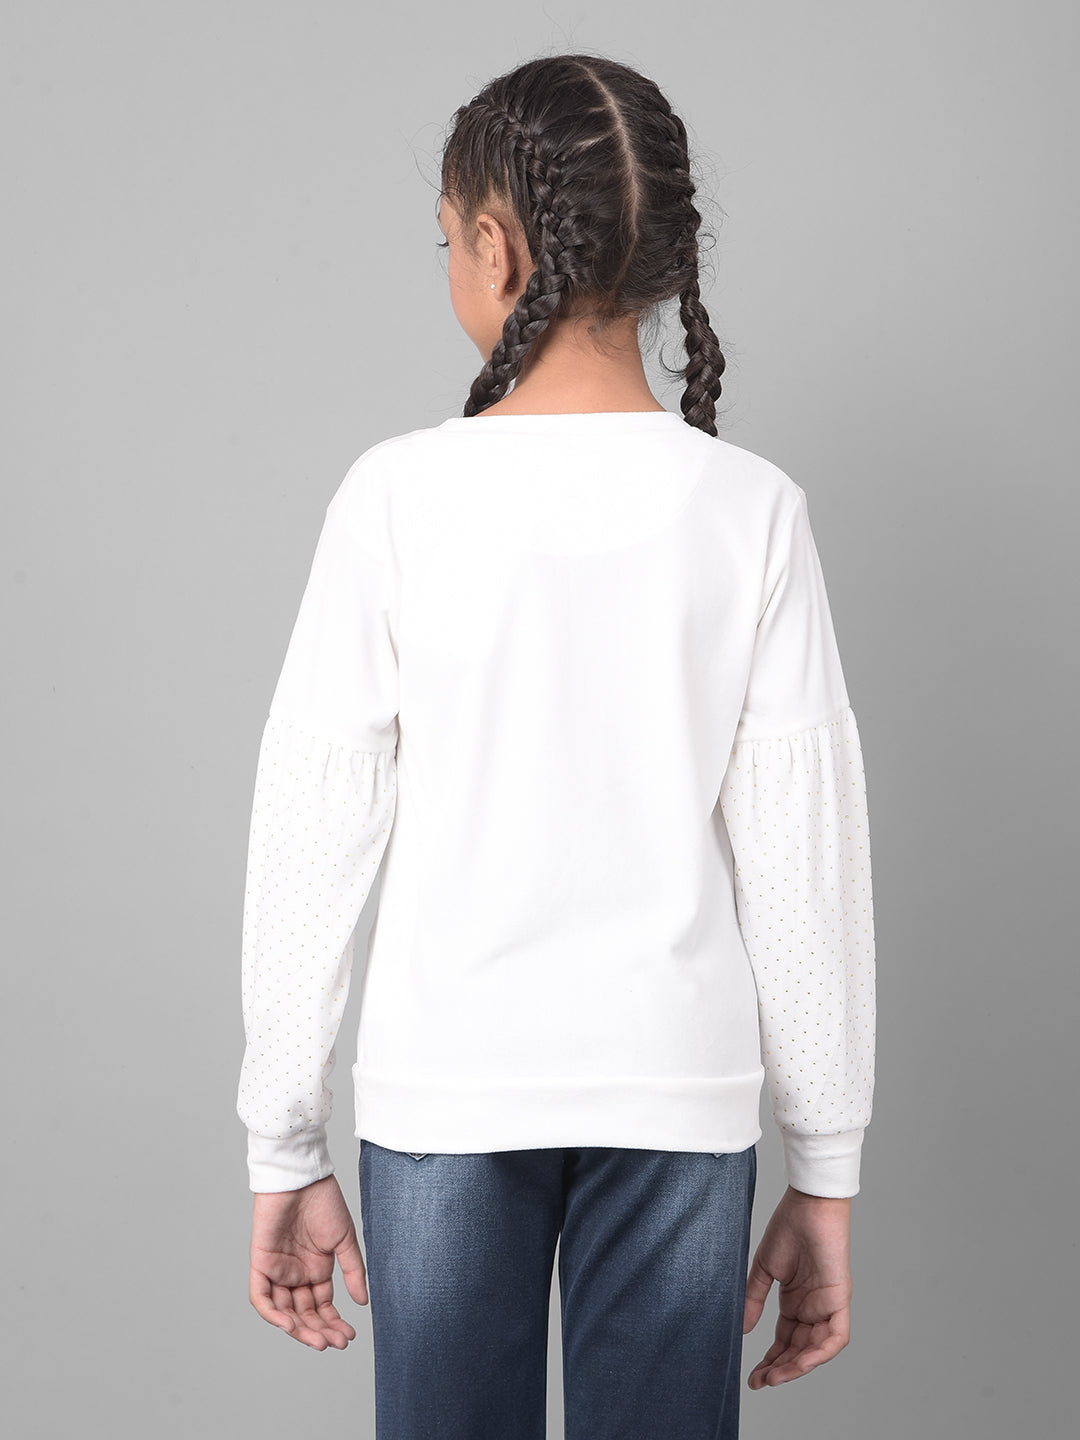 White Printed Sweatshirt-Girls Sweatshirts-Crimsoune Club